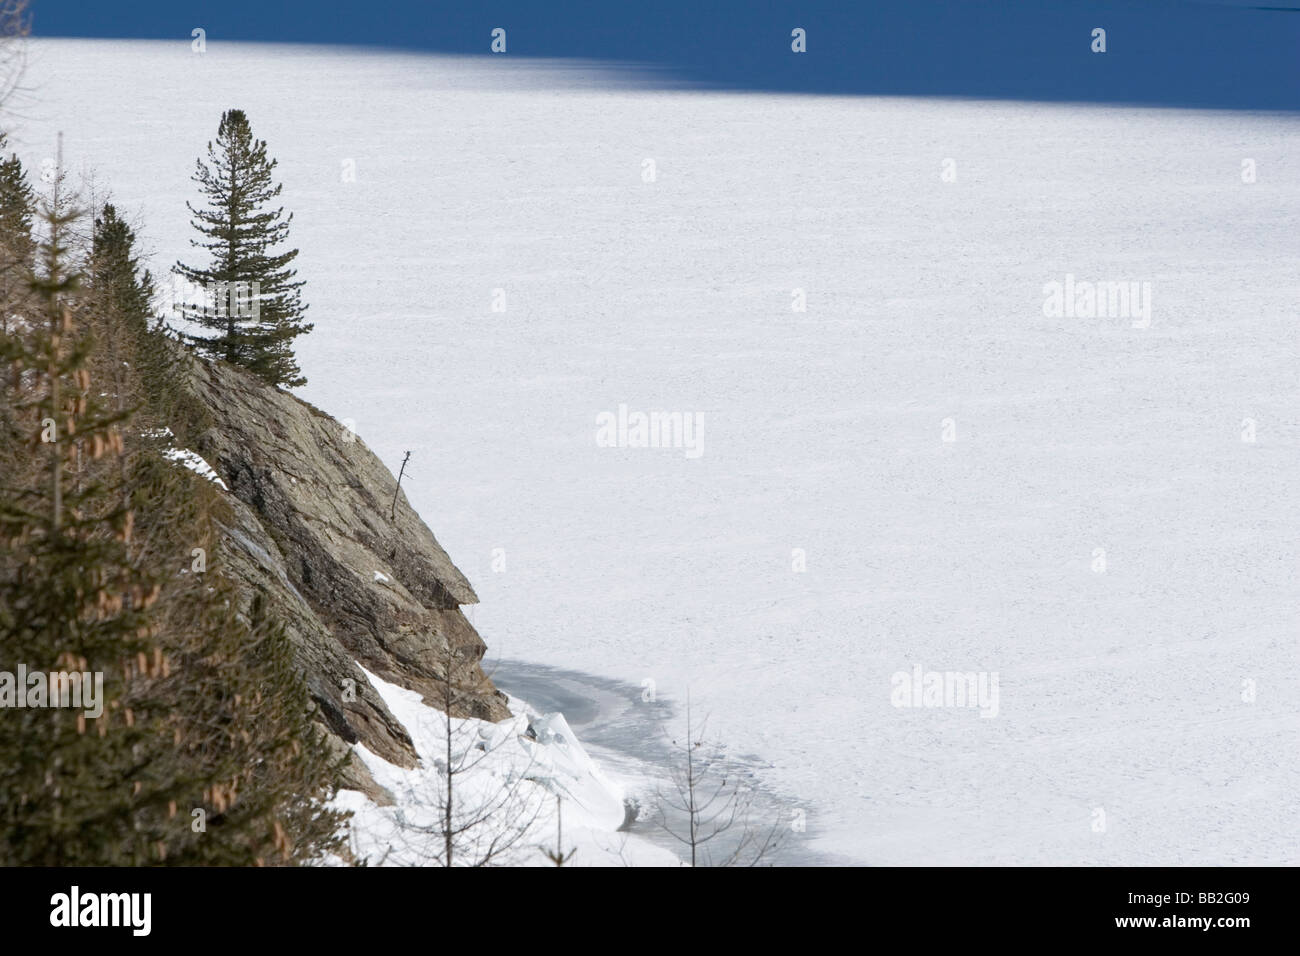 Zuffritsee / Gioveretto Reservoir zugefroren und schneebedeckt Alto Adige, Italien Stockfoto